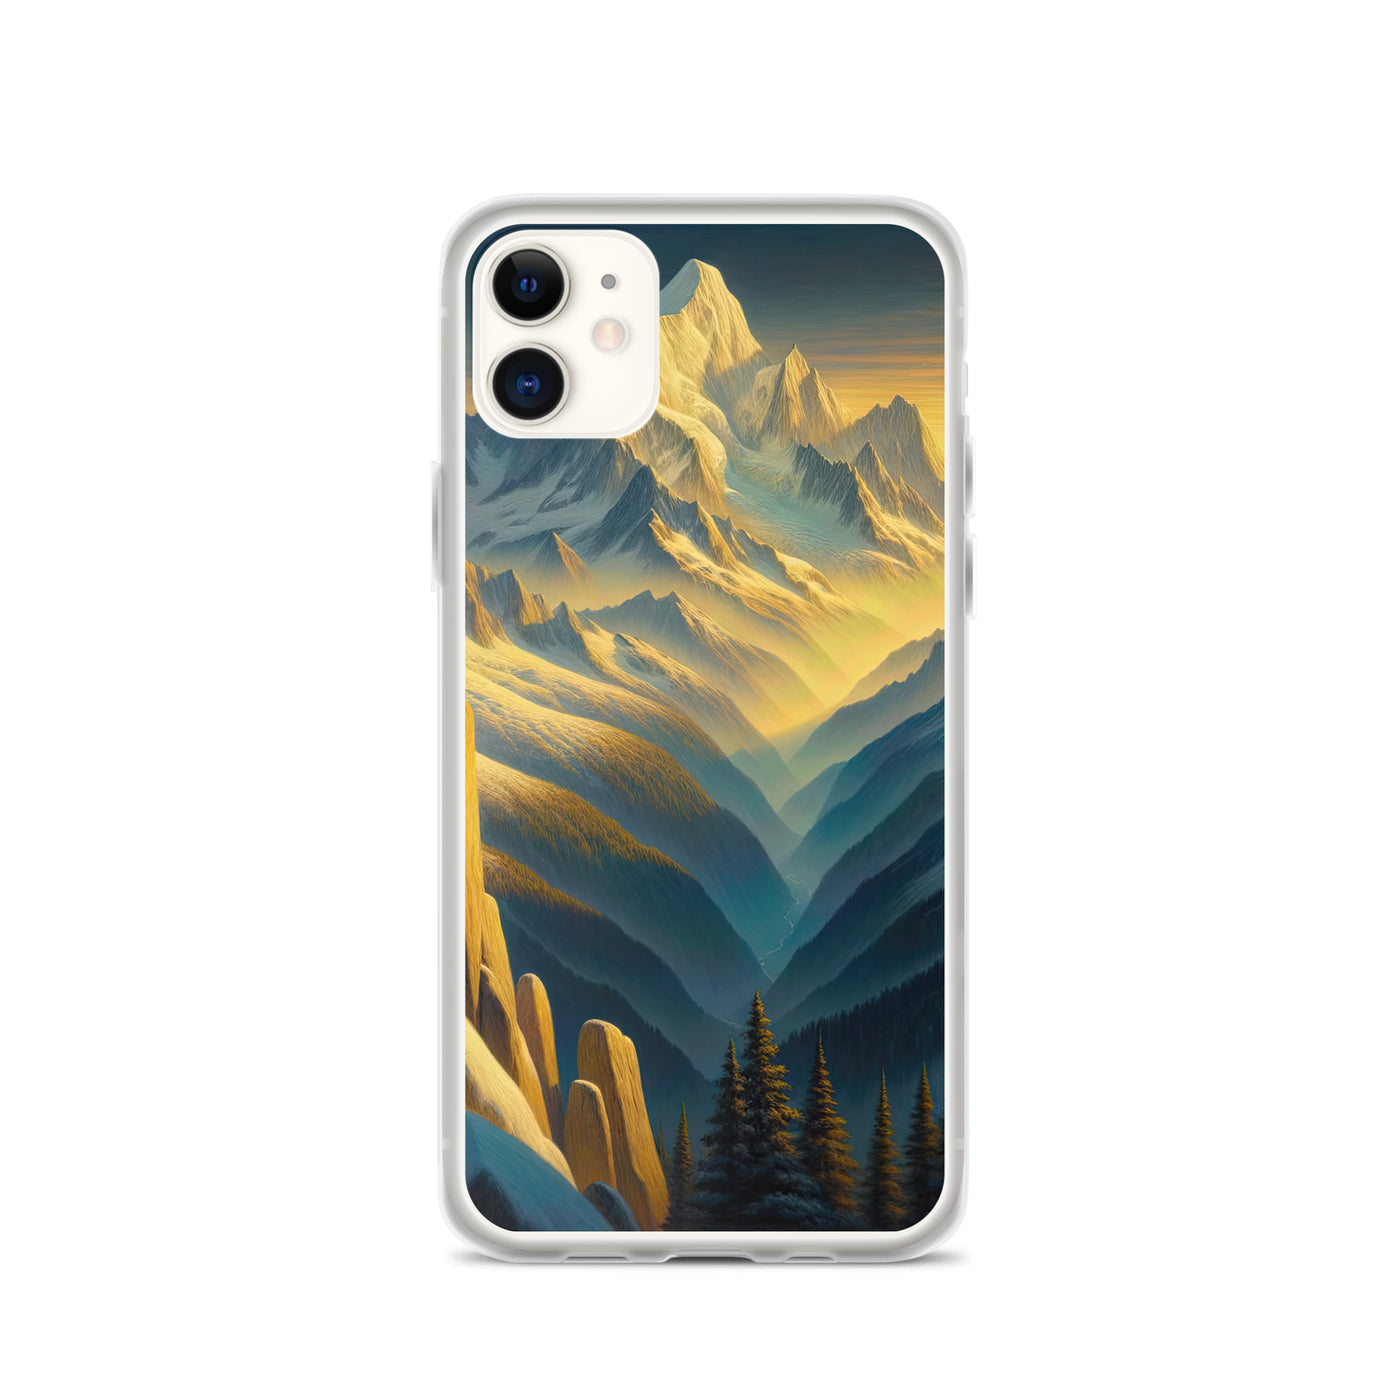 Ölgemälde eines Wanderers bei Morgendämmerung auf Alpengipfeln mit goldenem Sonnenlicht - iPhone Schutzhülle (durchsichtig) wandern xxx yyy zzz iPhone 11